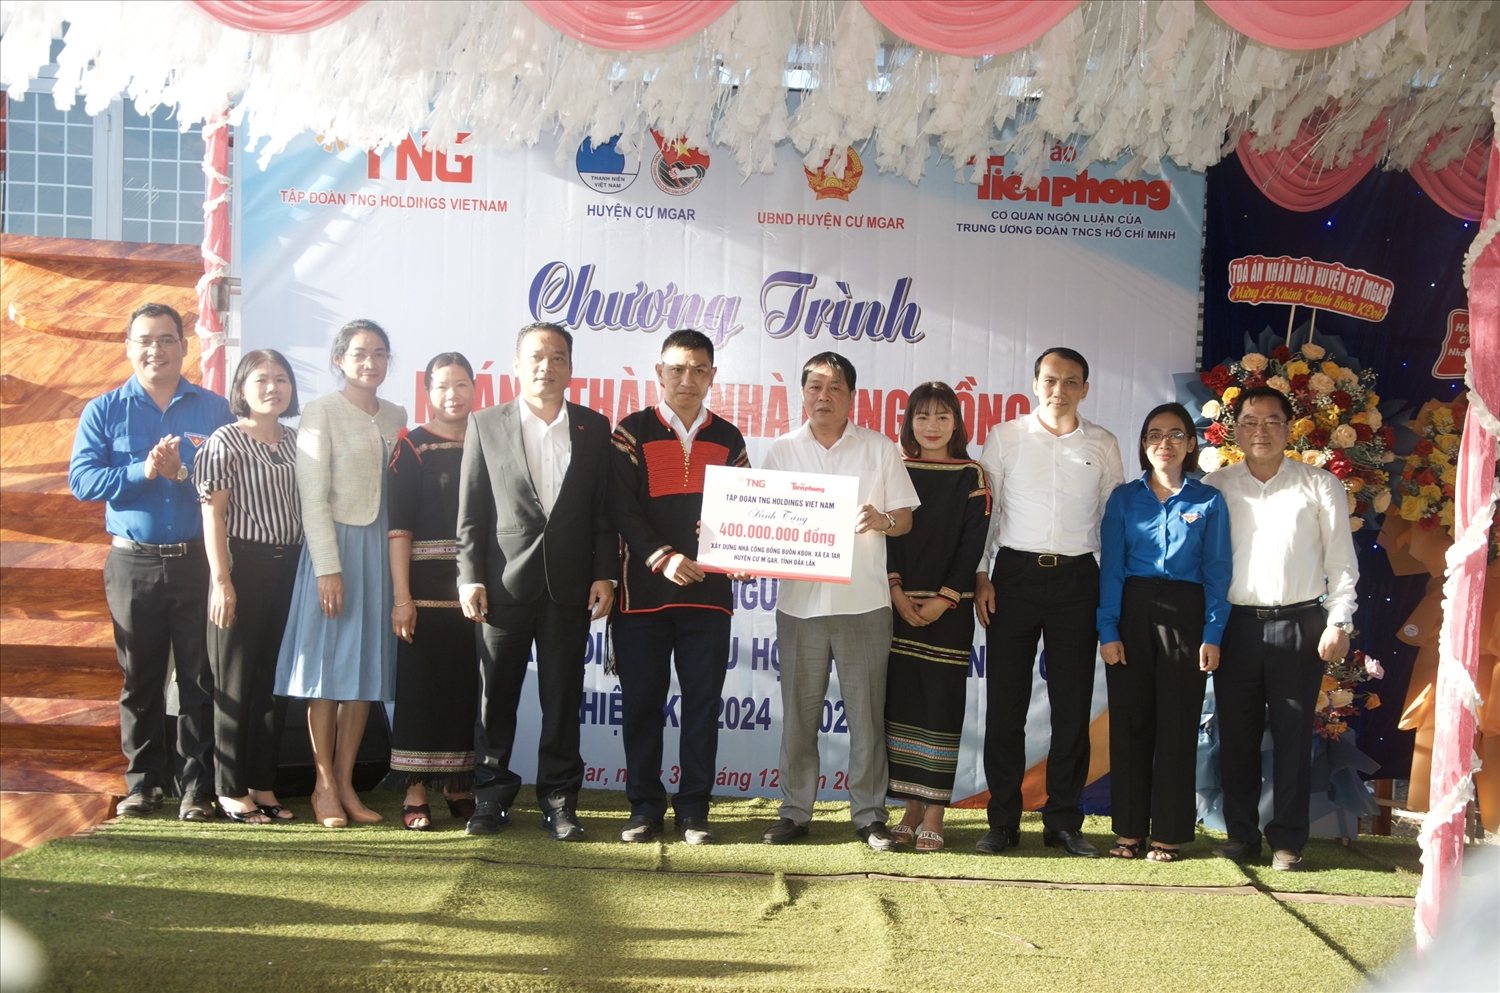 Ban tổ chức trao bảng tượng trưng tặng nhà cộng đồng 400 triệu đồng buôn Kđoh